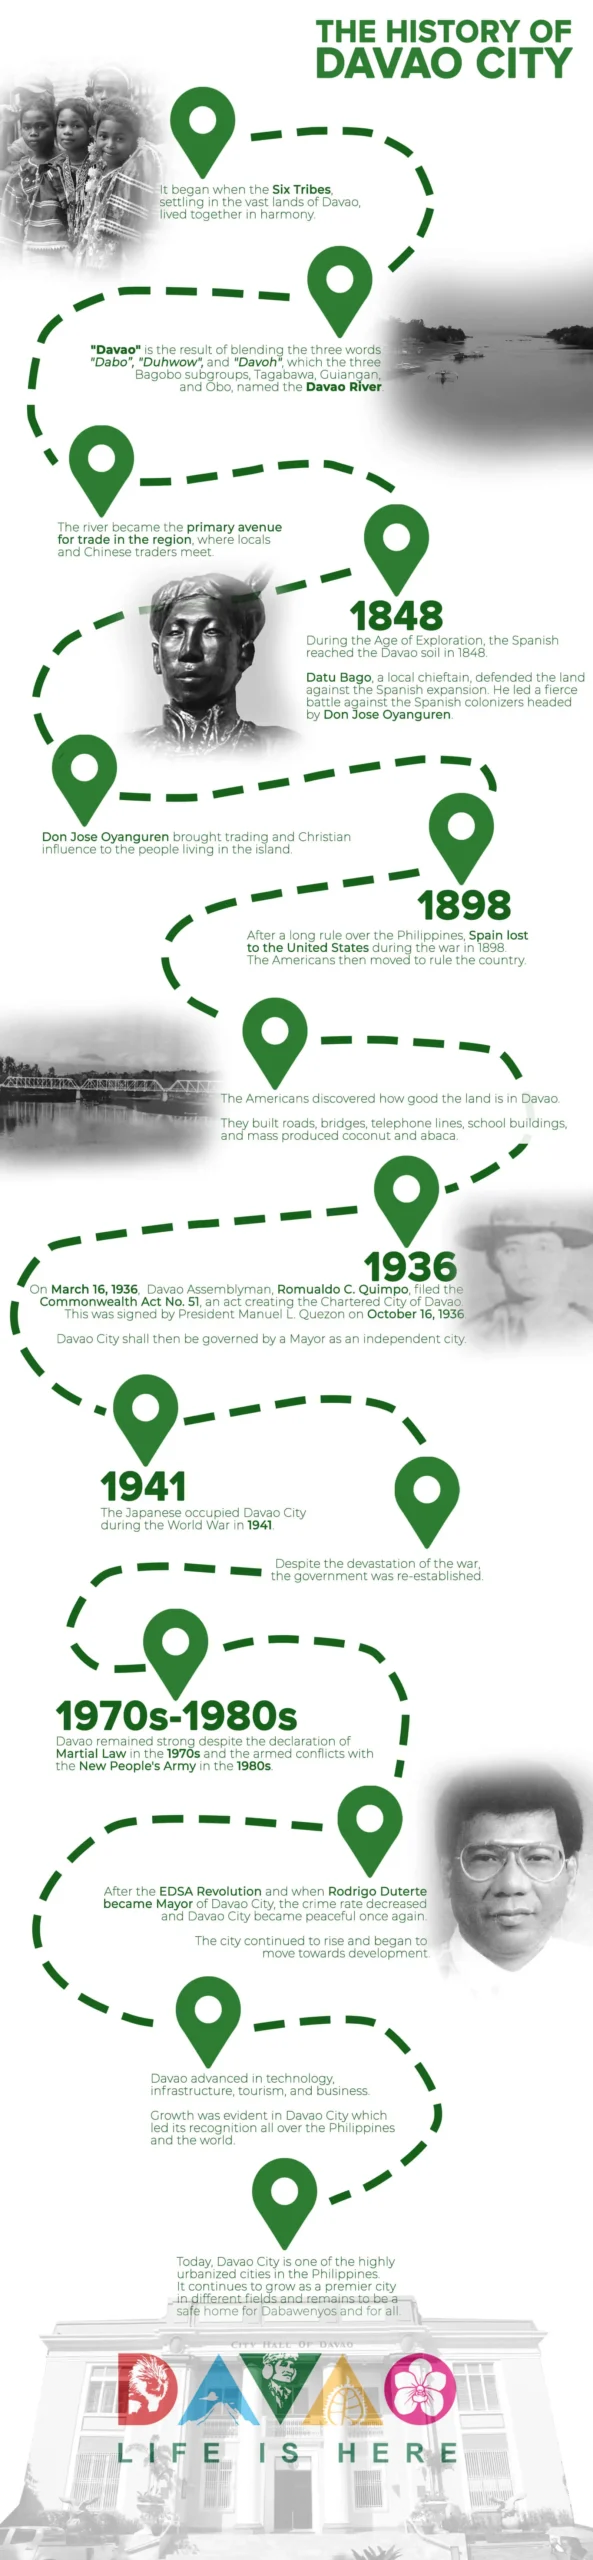 Davao City history